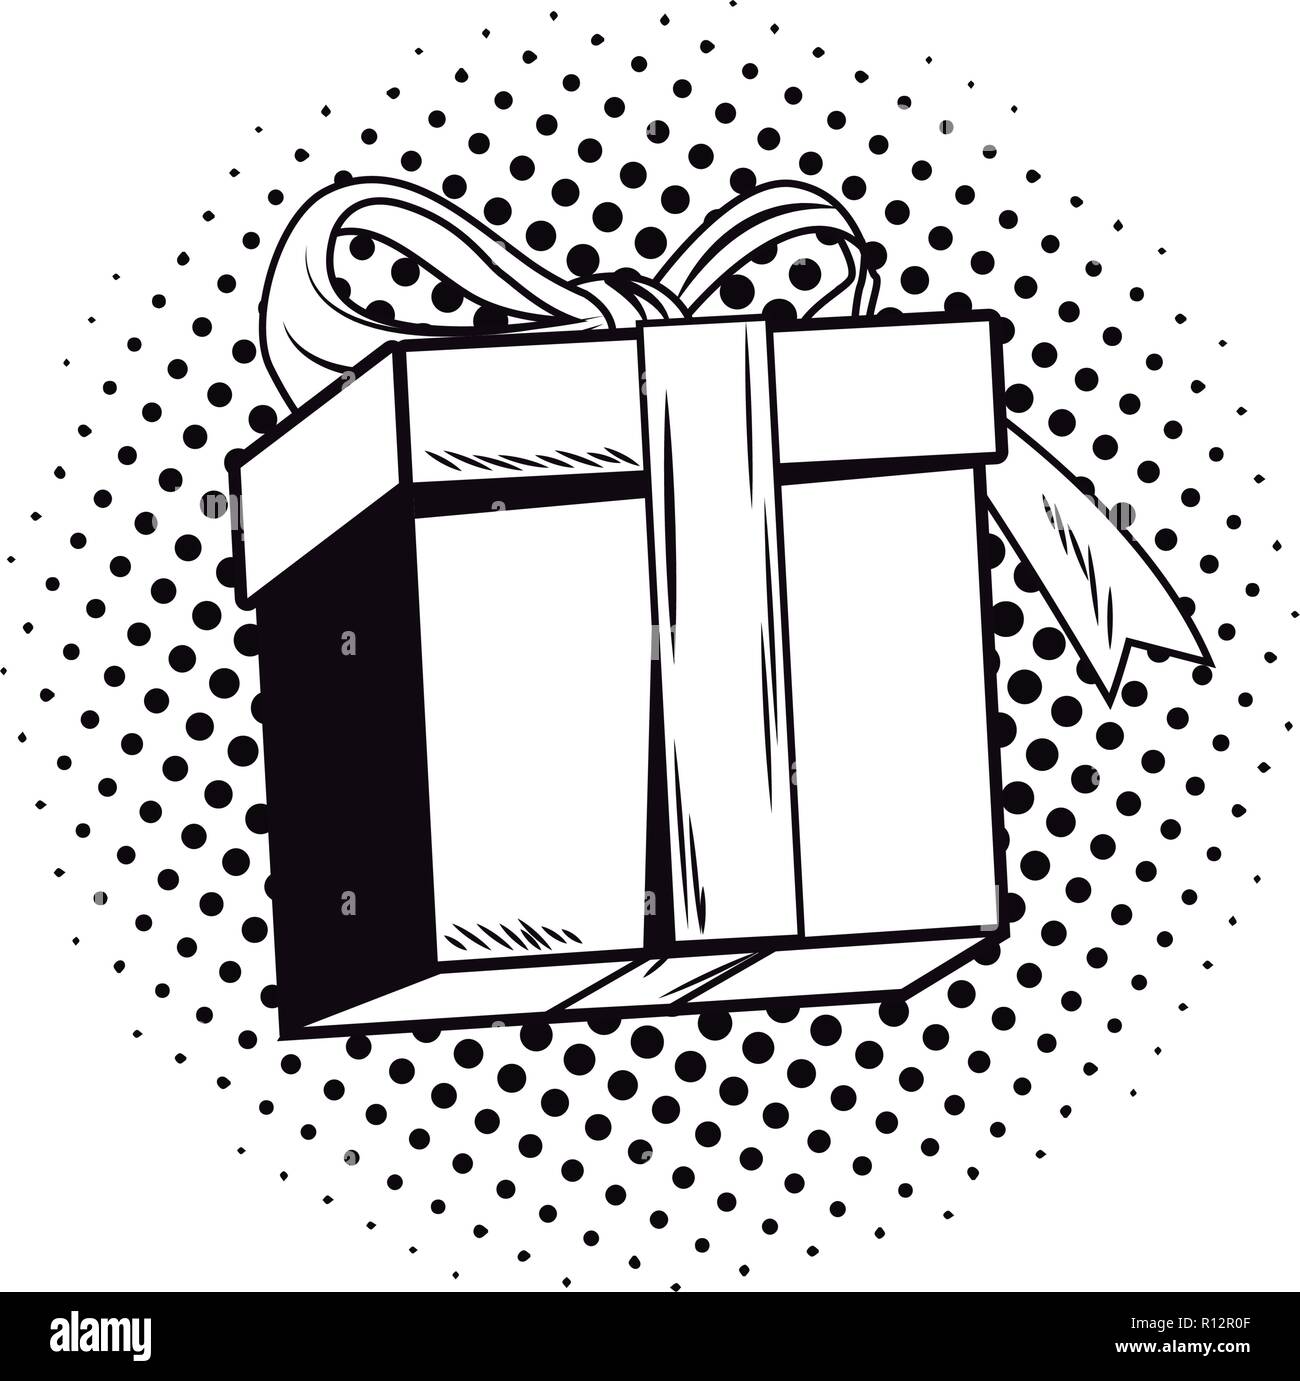 Pop Art Geschenk Cartoon schwarz und weiß Stock-Vektorgrafik - Alamy